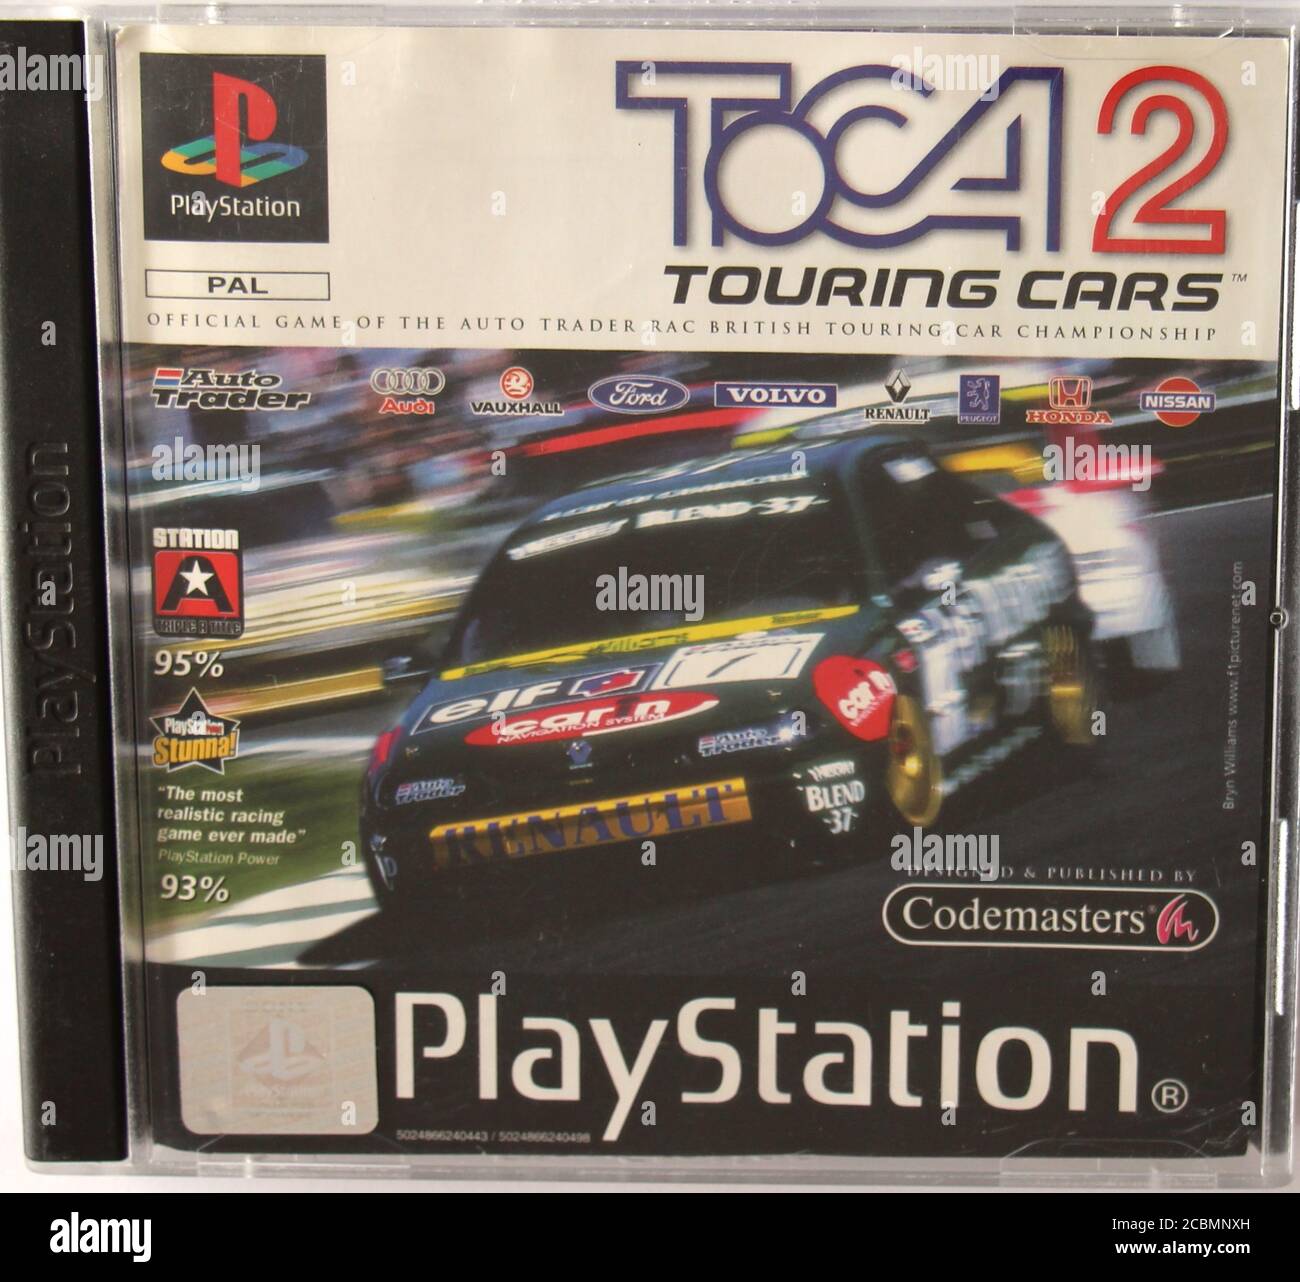 Photo d'une boîte CD PlayStation 1 originale et d'une couverture pour le jeu DE course DE voitures de tourisme TOCA 2 Banque D'Images